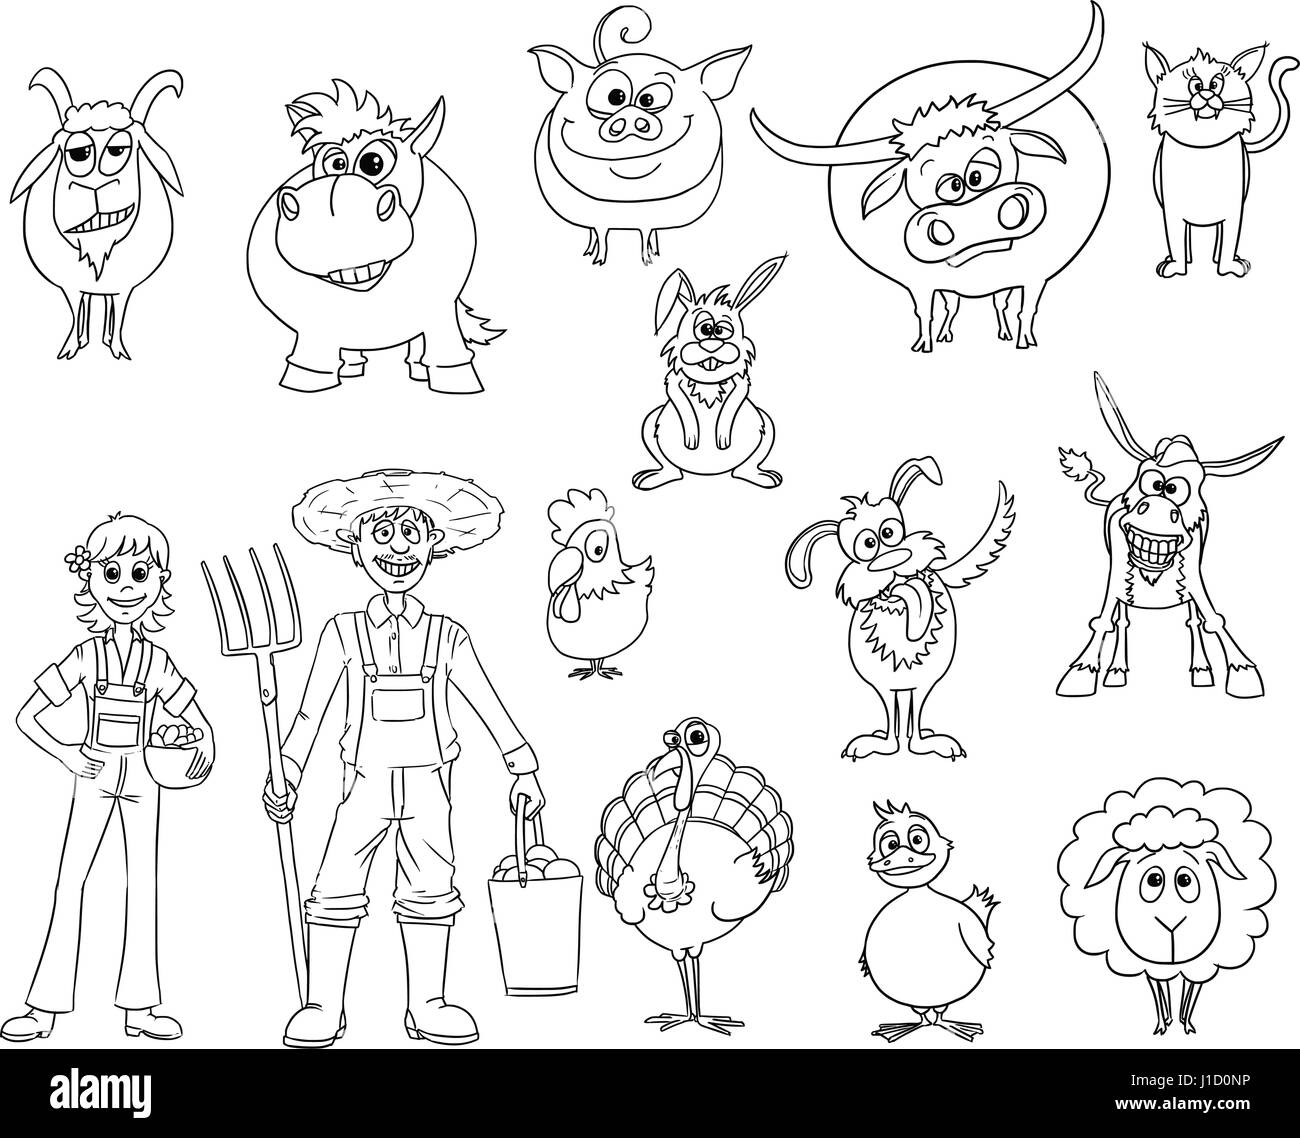 Disegnata a mano insieme di vettore di cartoon gli animali della fattoria e maschio e femmina degli agricoltori Illustrazione Vettoriale